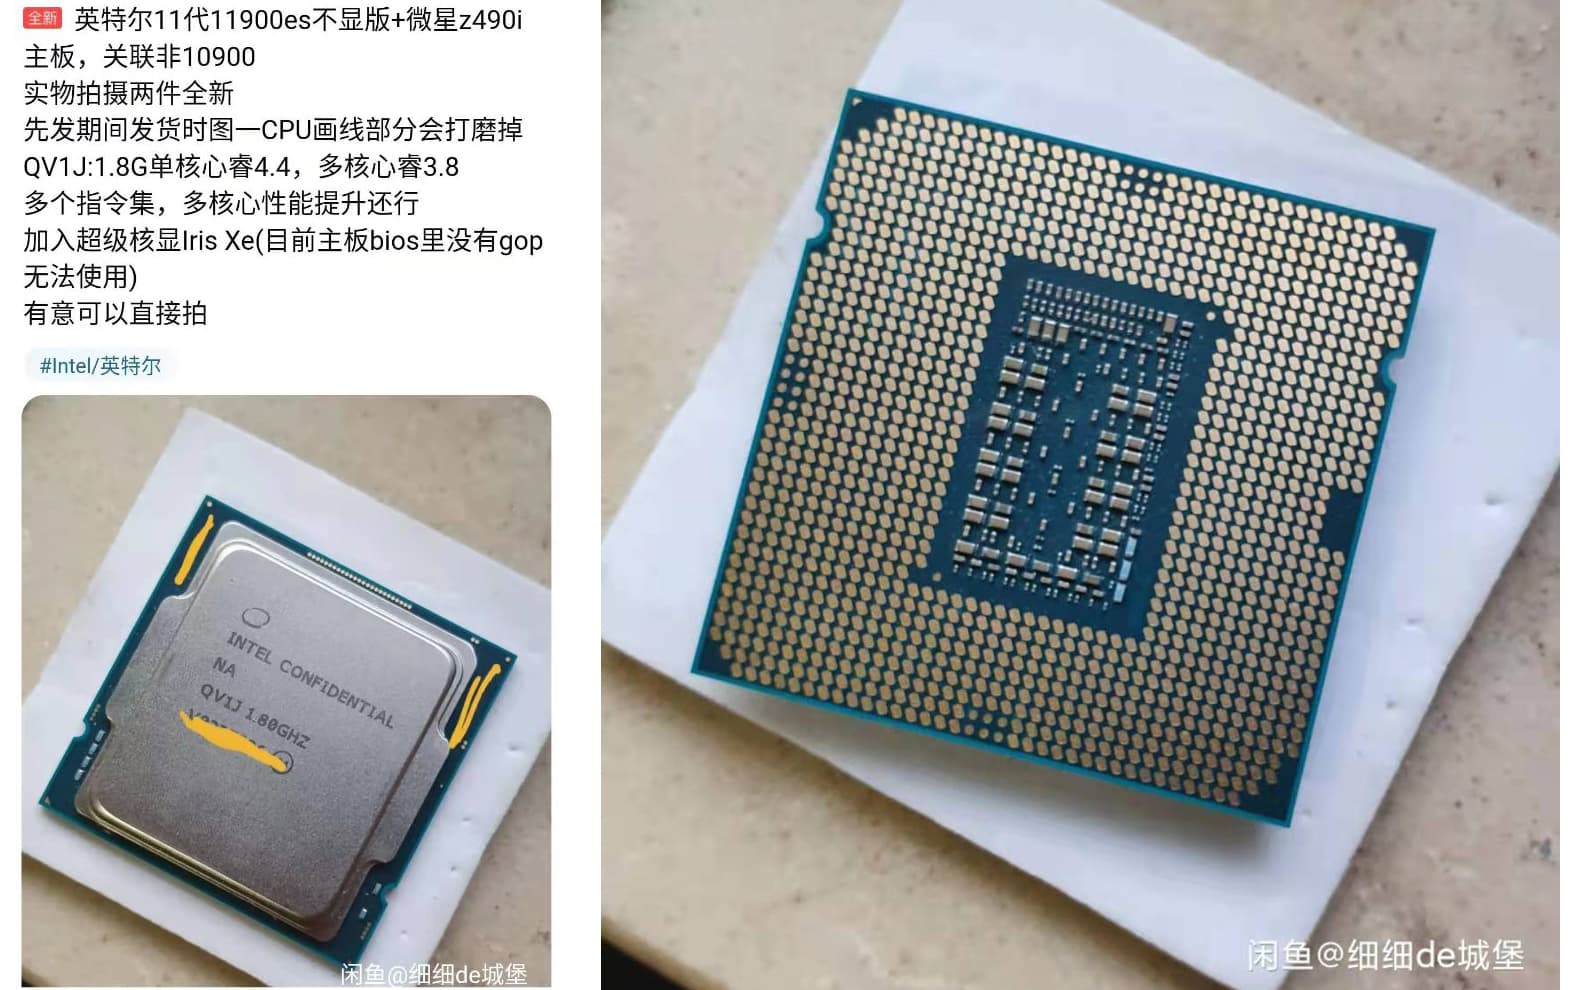 闲鱼(xianyu)に掲載されたES版Intel Core i9-11900と称する個体